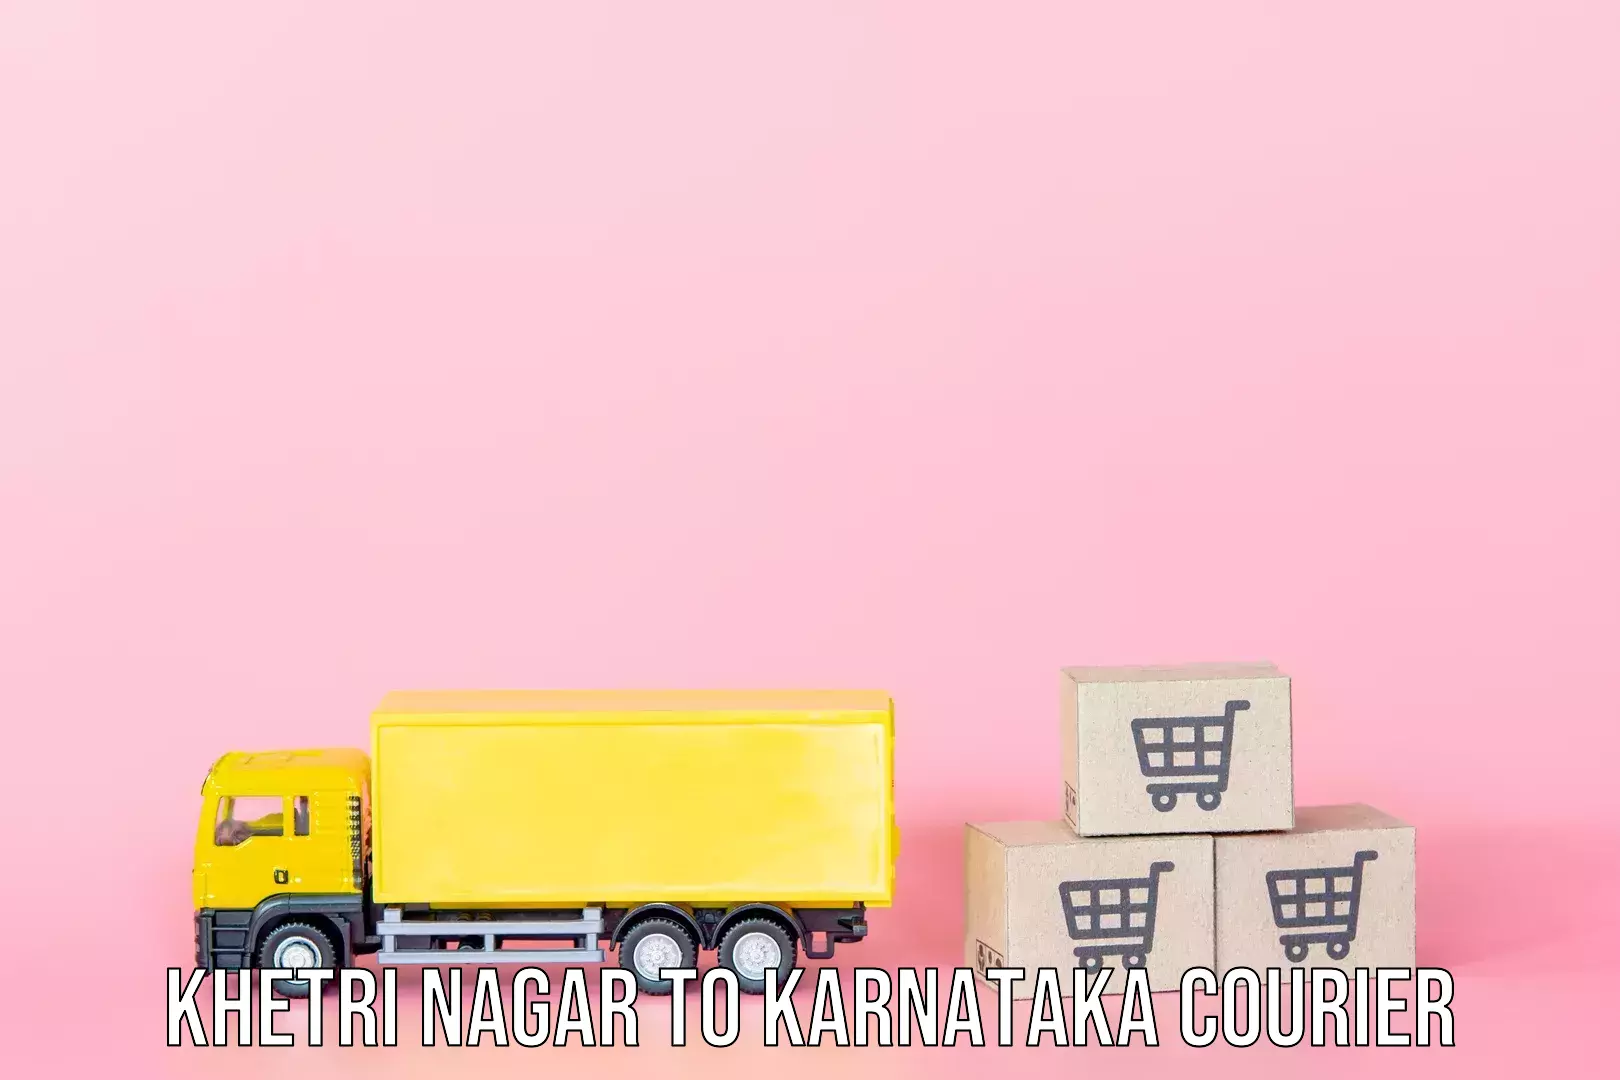 Luggage transfer service Khetri Nagar to Krishnarajanagara